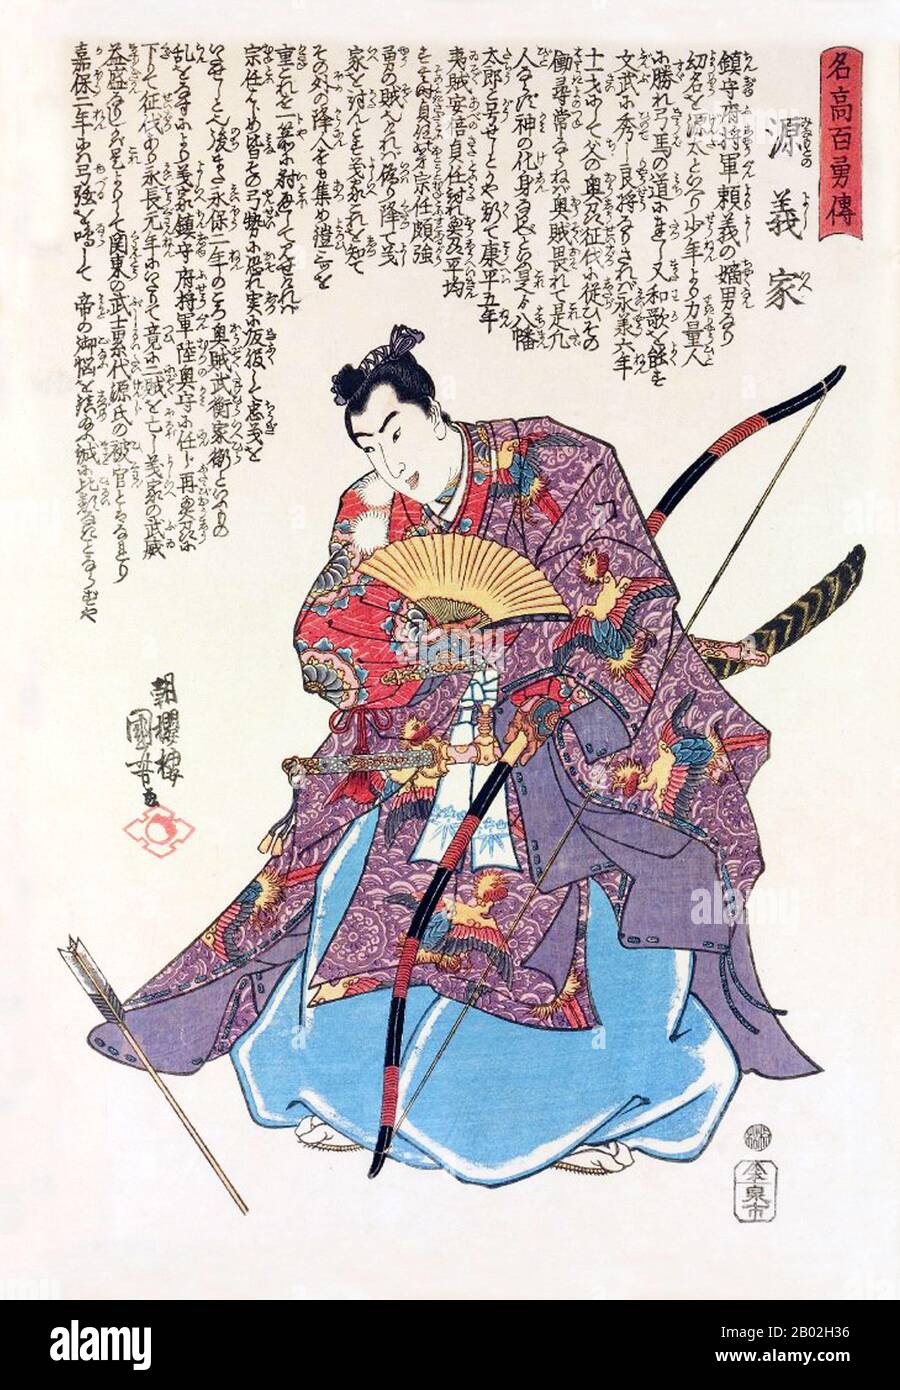 Samurai ist die Bezeichnung für den militärischen Adel des vorindustriellen Japan. Ende des 12. Jahrhunderts wurde Samurai fast völlig zum Synonym für Bushi, und das Wort war eng mit den mittleren und oberen Echelonen der Krieger-Klasse verbunden. Die Samurai folgten einer Reihe von Regeln, die als Bushidō bekannt wurden. Während sie weniger als zehn Prozent der japanischen Bevölkerung zählten, sind Samurai-Lehren heute noch sowohl im Alltag als auch in der Kampfkunst wie Kendō zu finden, was die Art des Schwerts bedeutet. Stockfoto